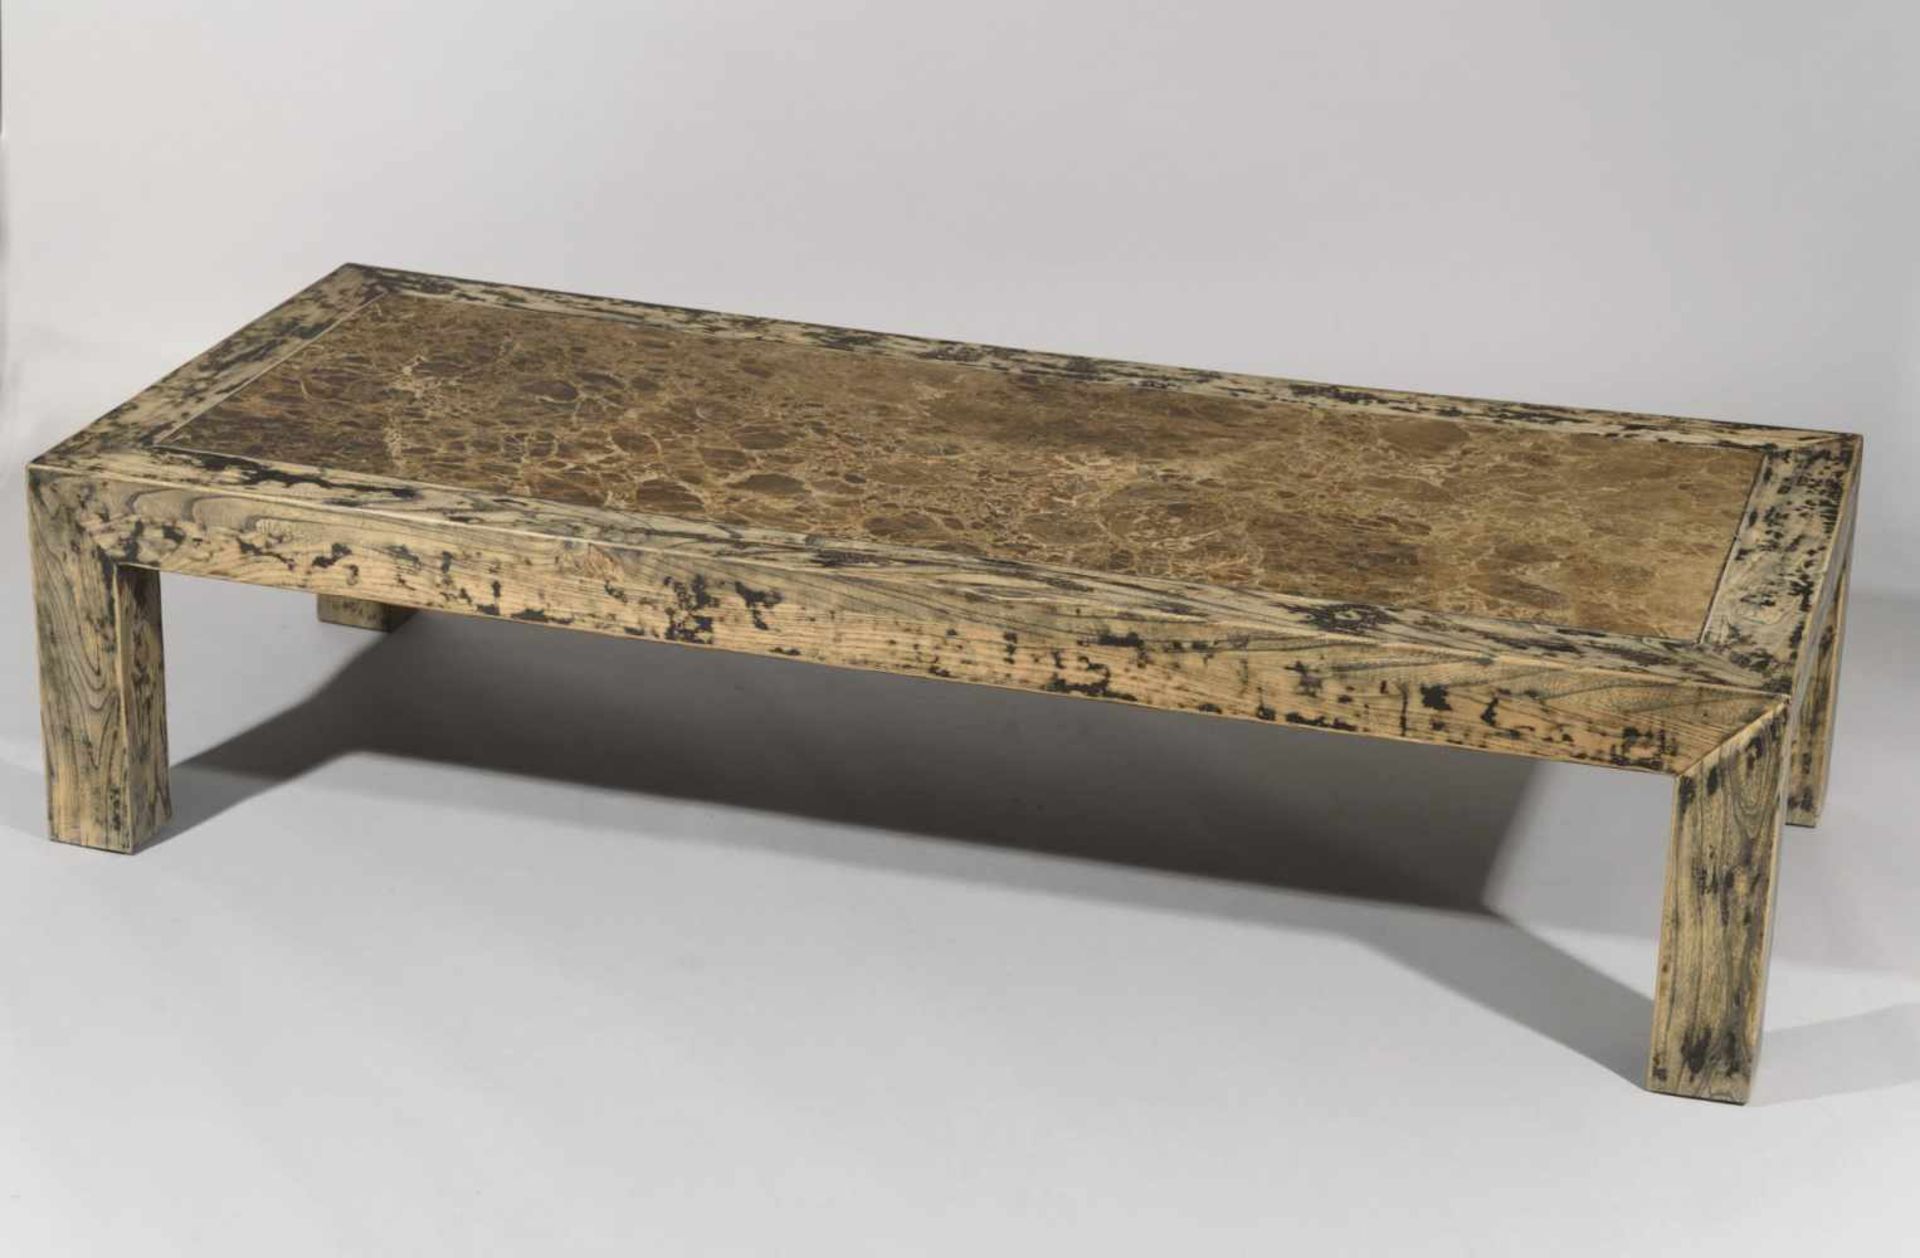 MESA DE CENTRO ESTILO PROVENZAL En madera decapada y policromada con sobre en piedra. Medidas:  43,5